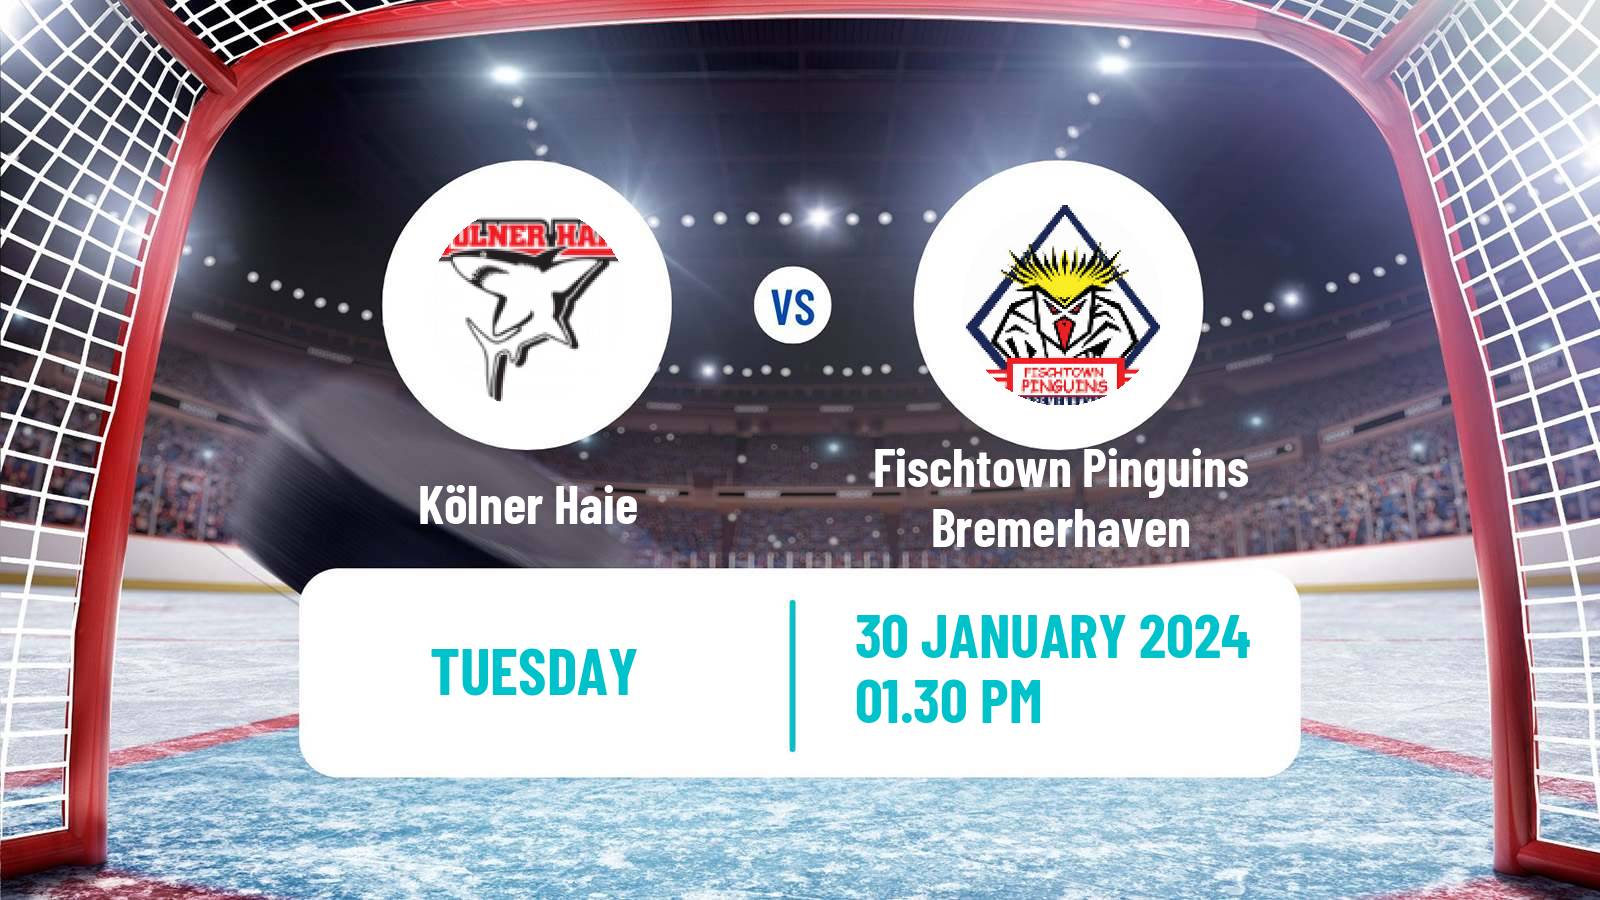 Hockey German Ice Hockey League Kölner Haie - Fischtown Pinguins Bremerhaven